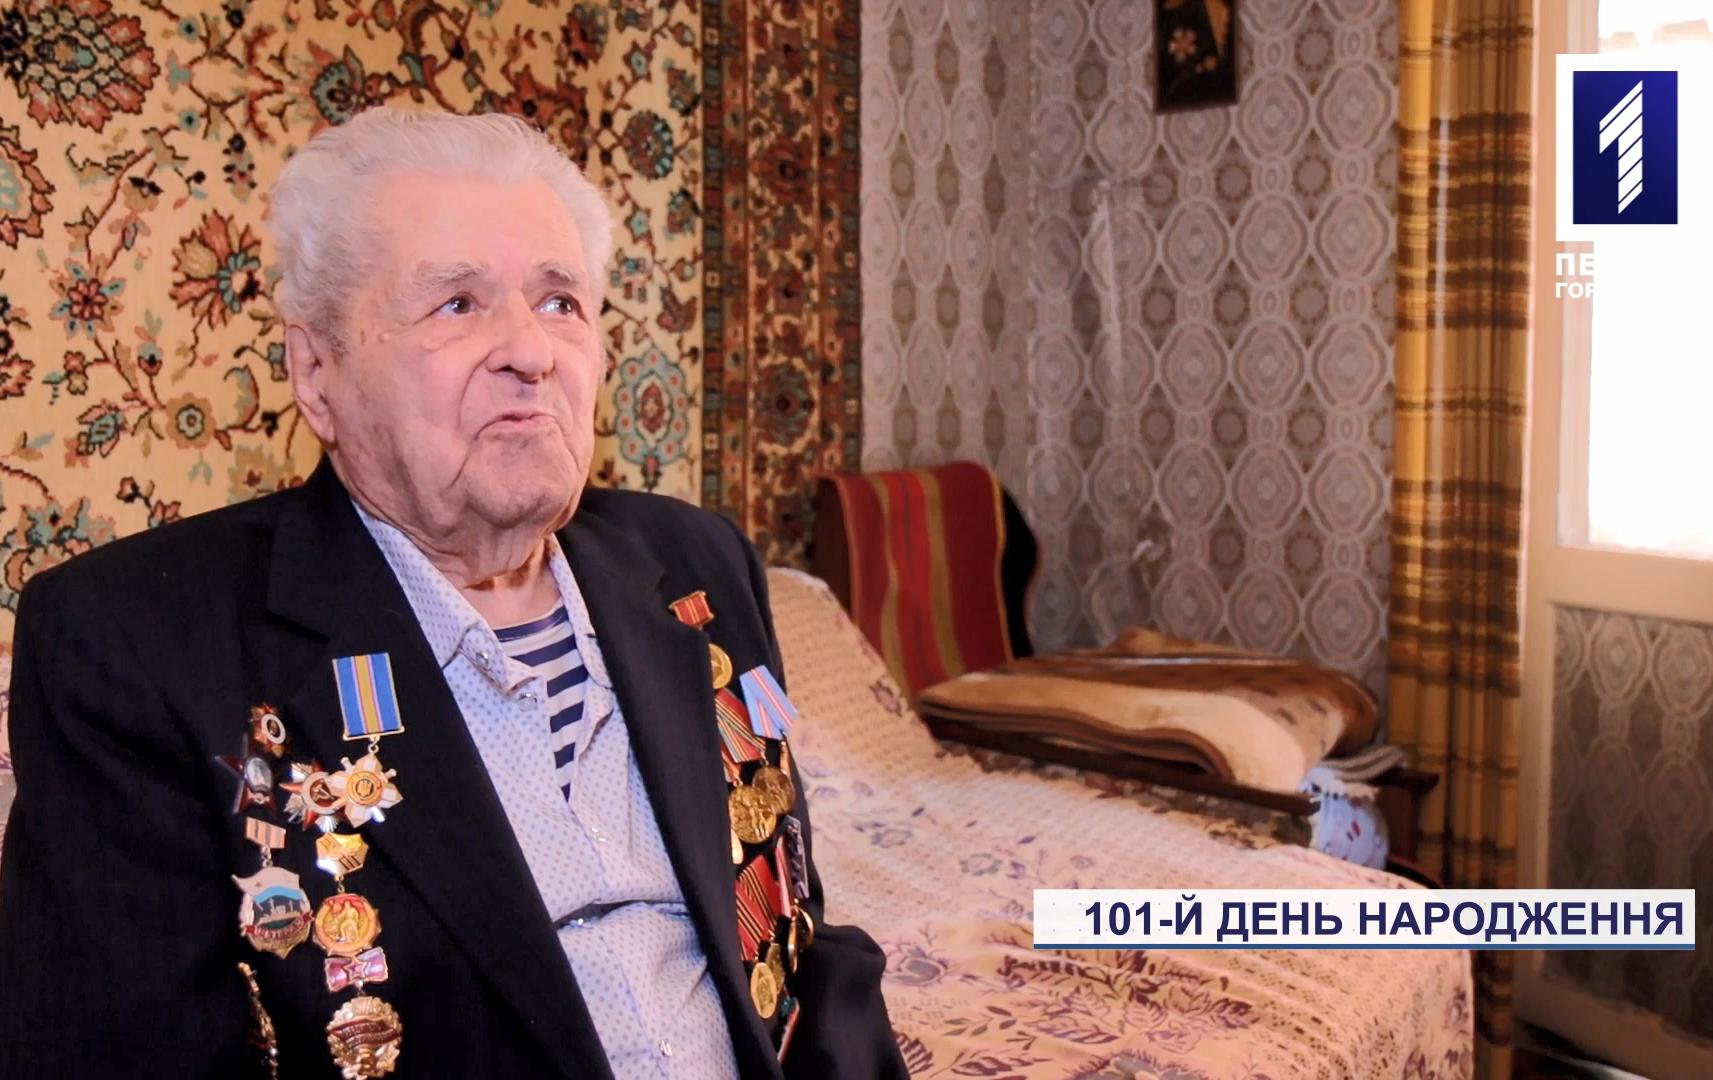 В Кривом Роге поздравили ветерана со 101-м Днем рождения